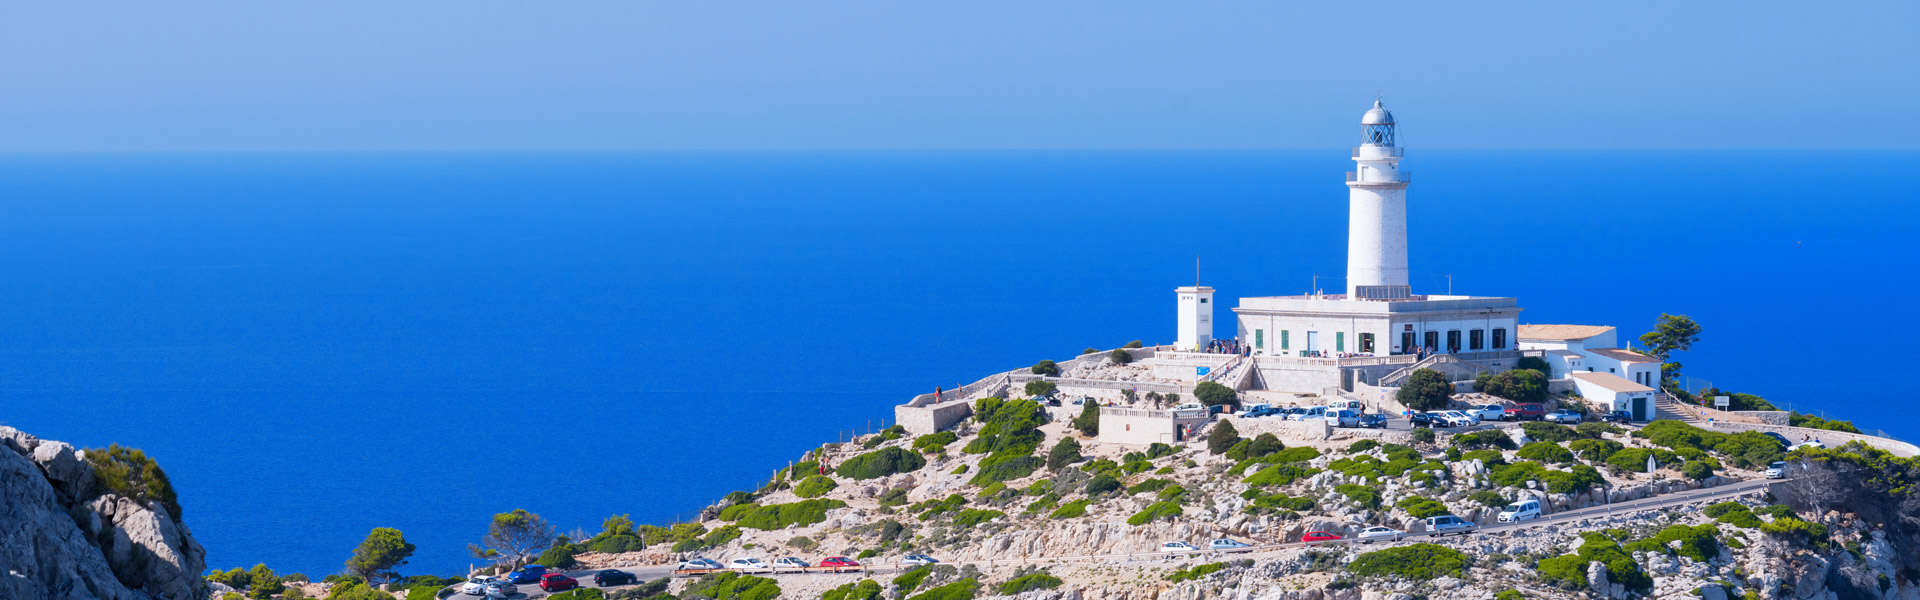 Traumhaft schön und immer einen Ausflug wert: Cap Formentor auf Mallorca mit dem berühmten Leutturm